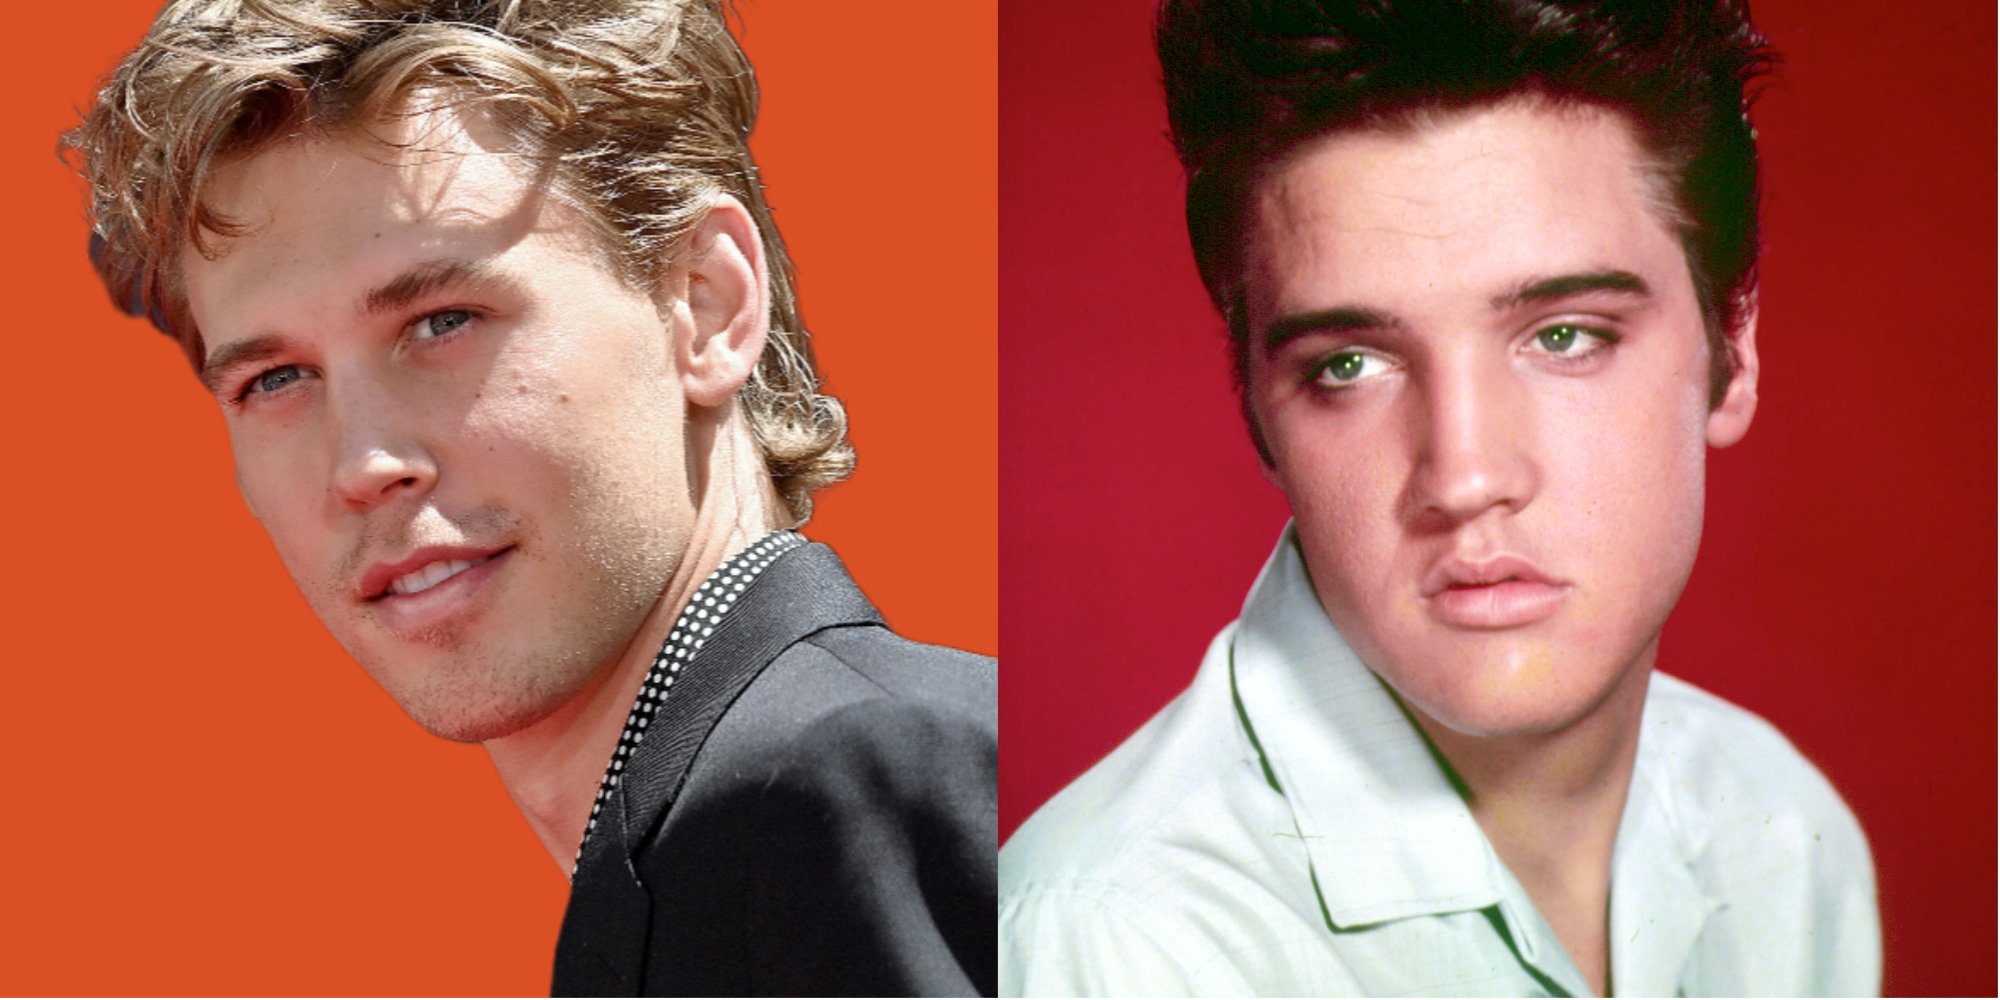 'Elvis' star Austin Butler and Elvis Presley in a side by side set of photographs.